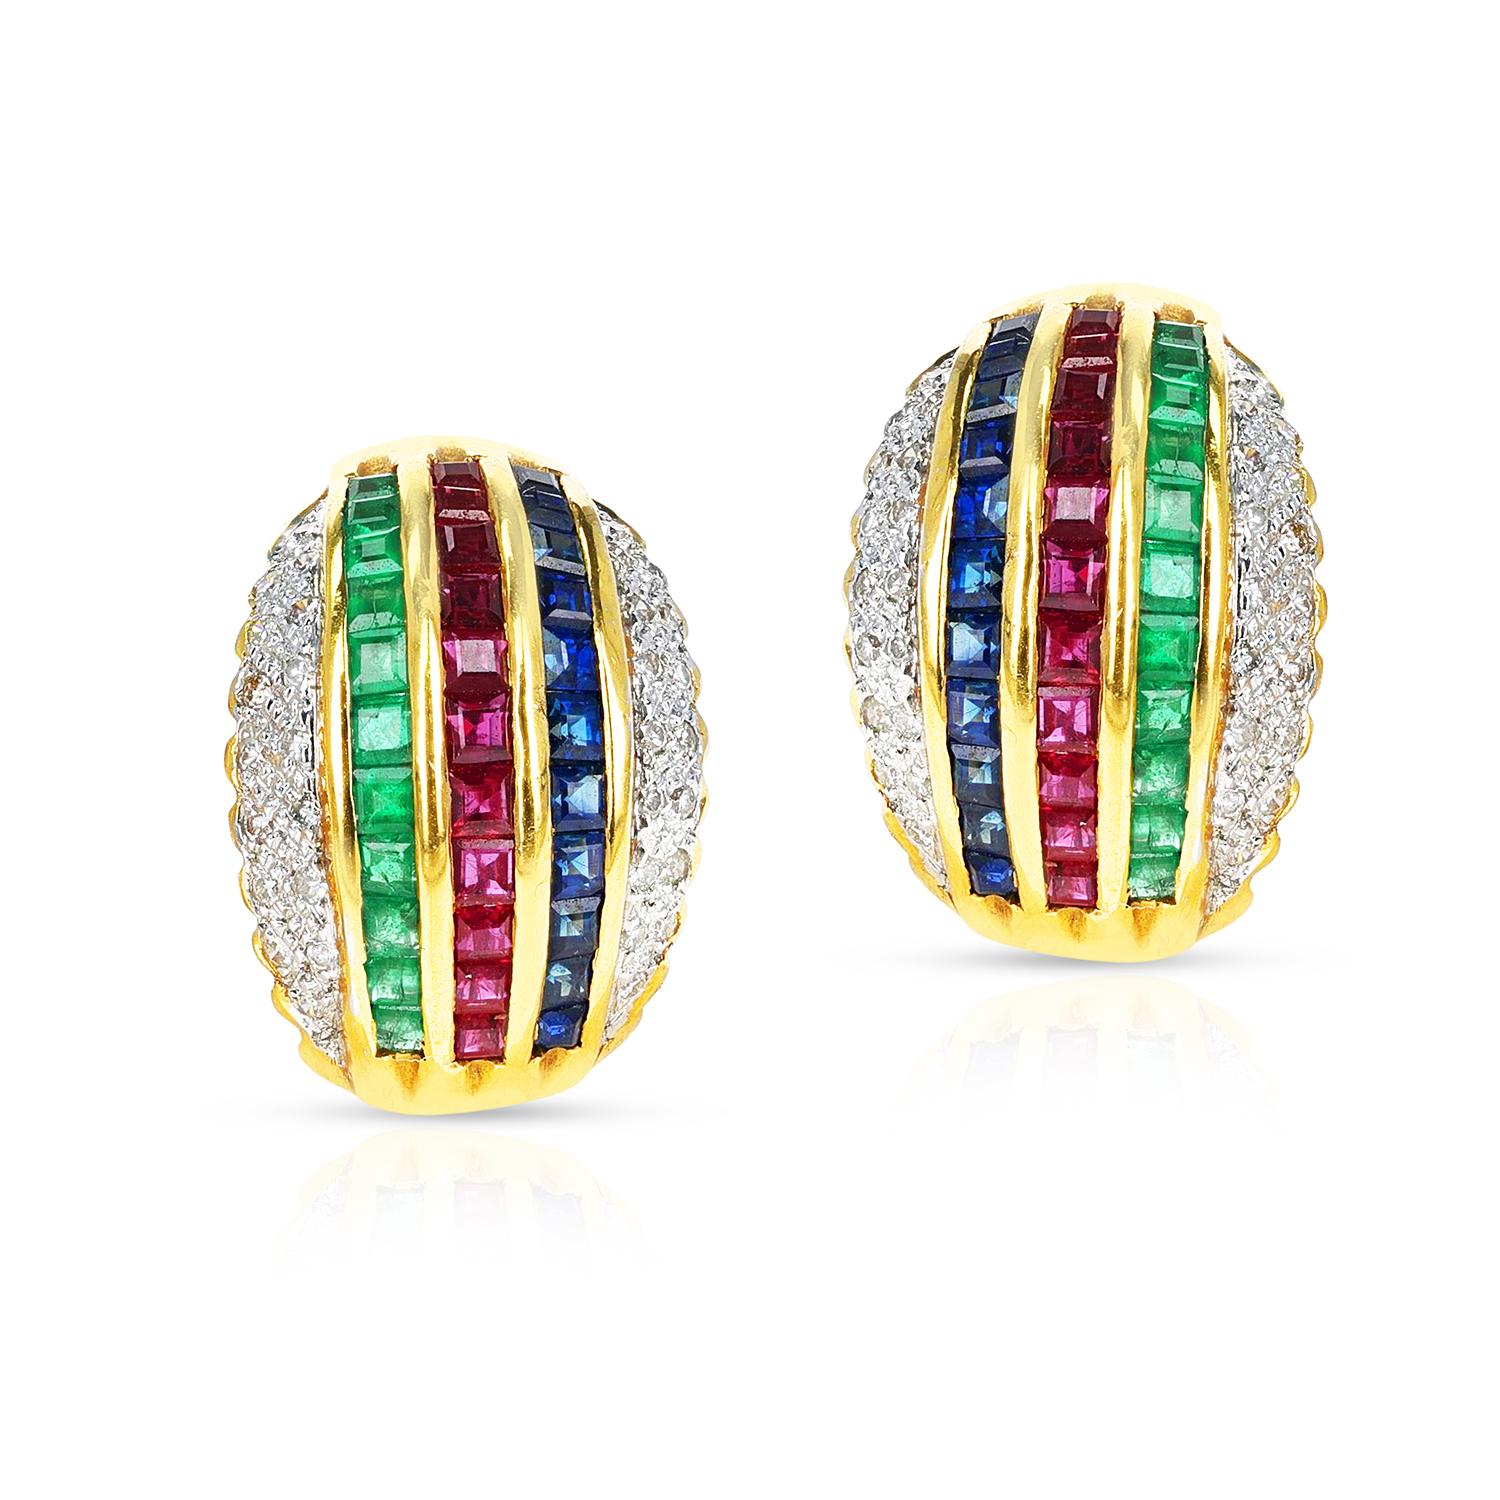 Ein Paar Rubin-, Smaragd-, Saphir- und Diamant-Ohrringe aus 18k Gelbgold. Zu den Ohrringen gehört ein passender Ring, der Teil des Sets ist. Das Gesamtgewicht des Ohrrings beträgt 12,99 Gramm. Die Länge 0,60